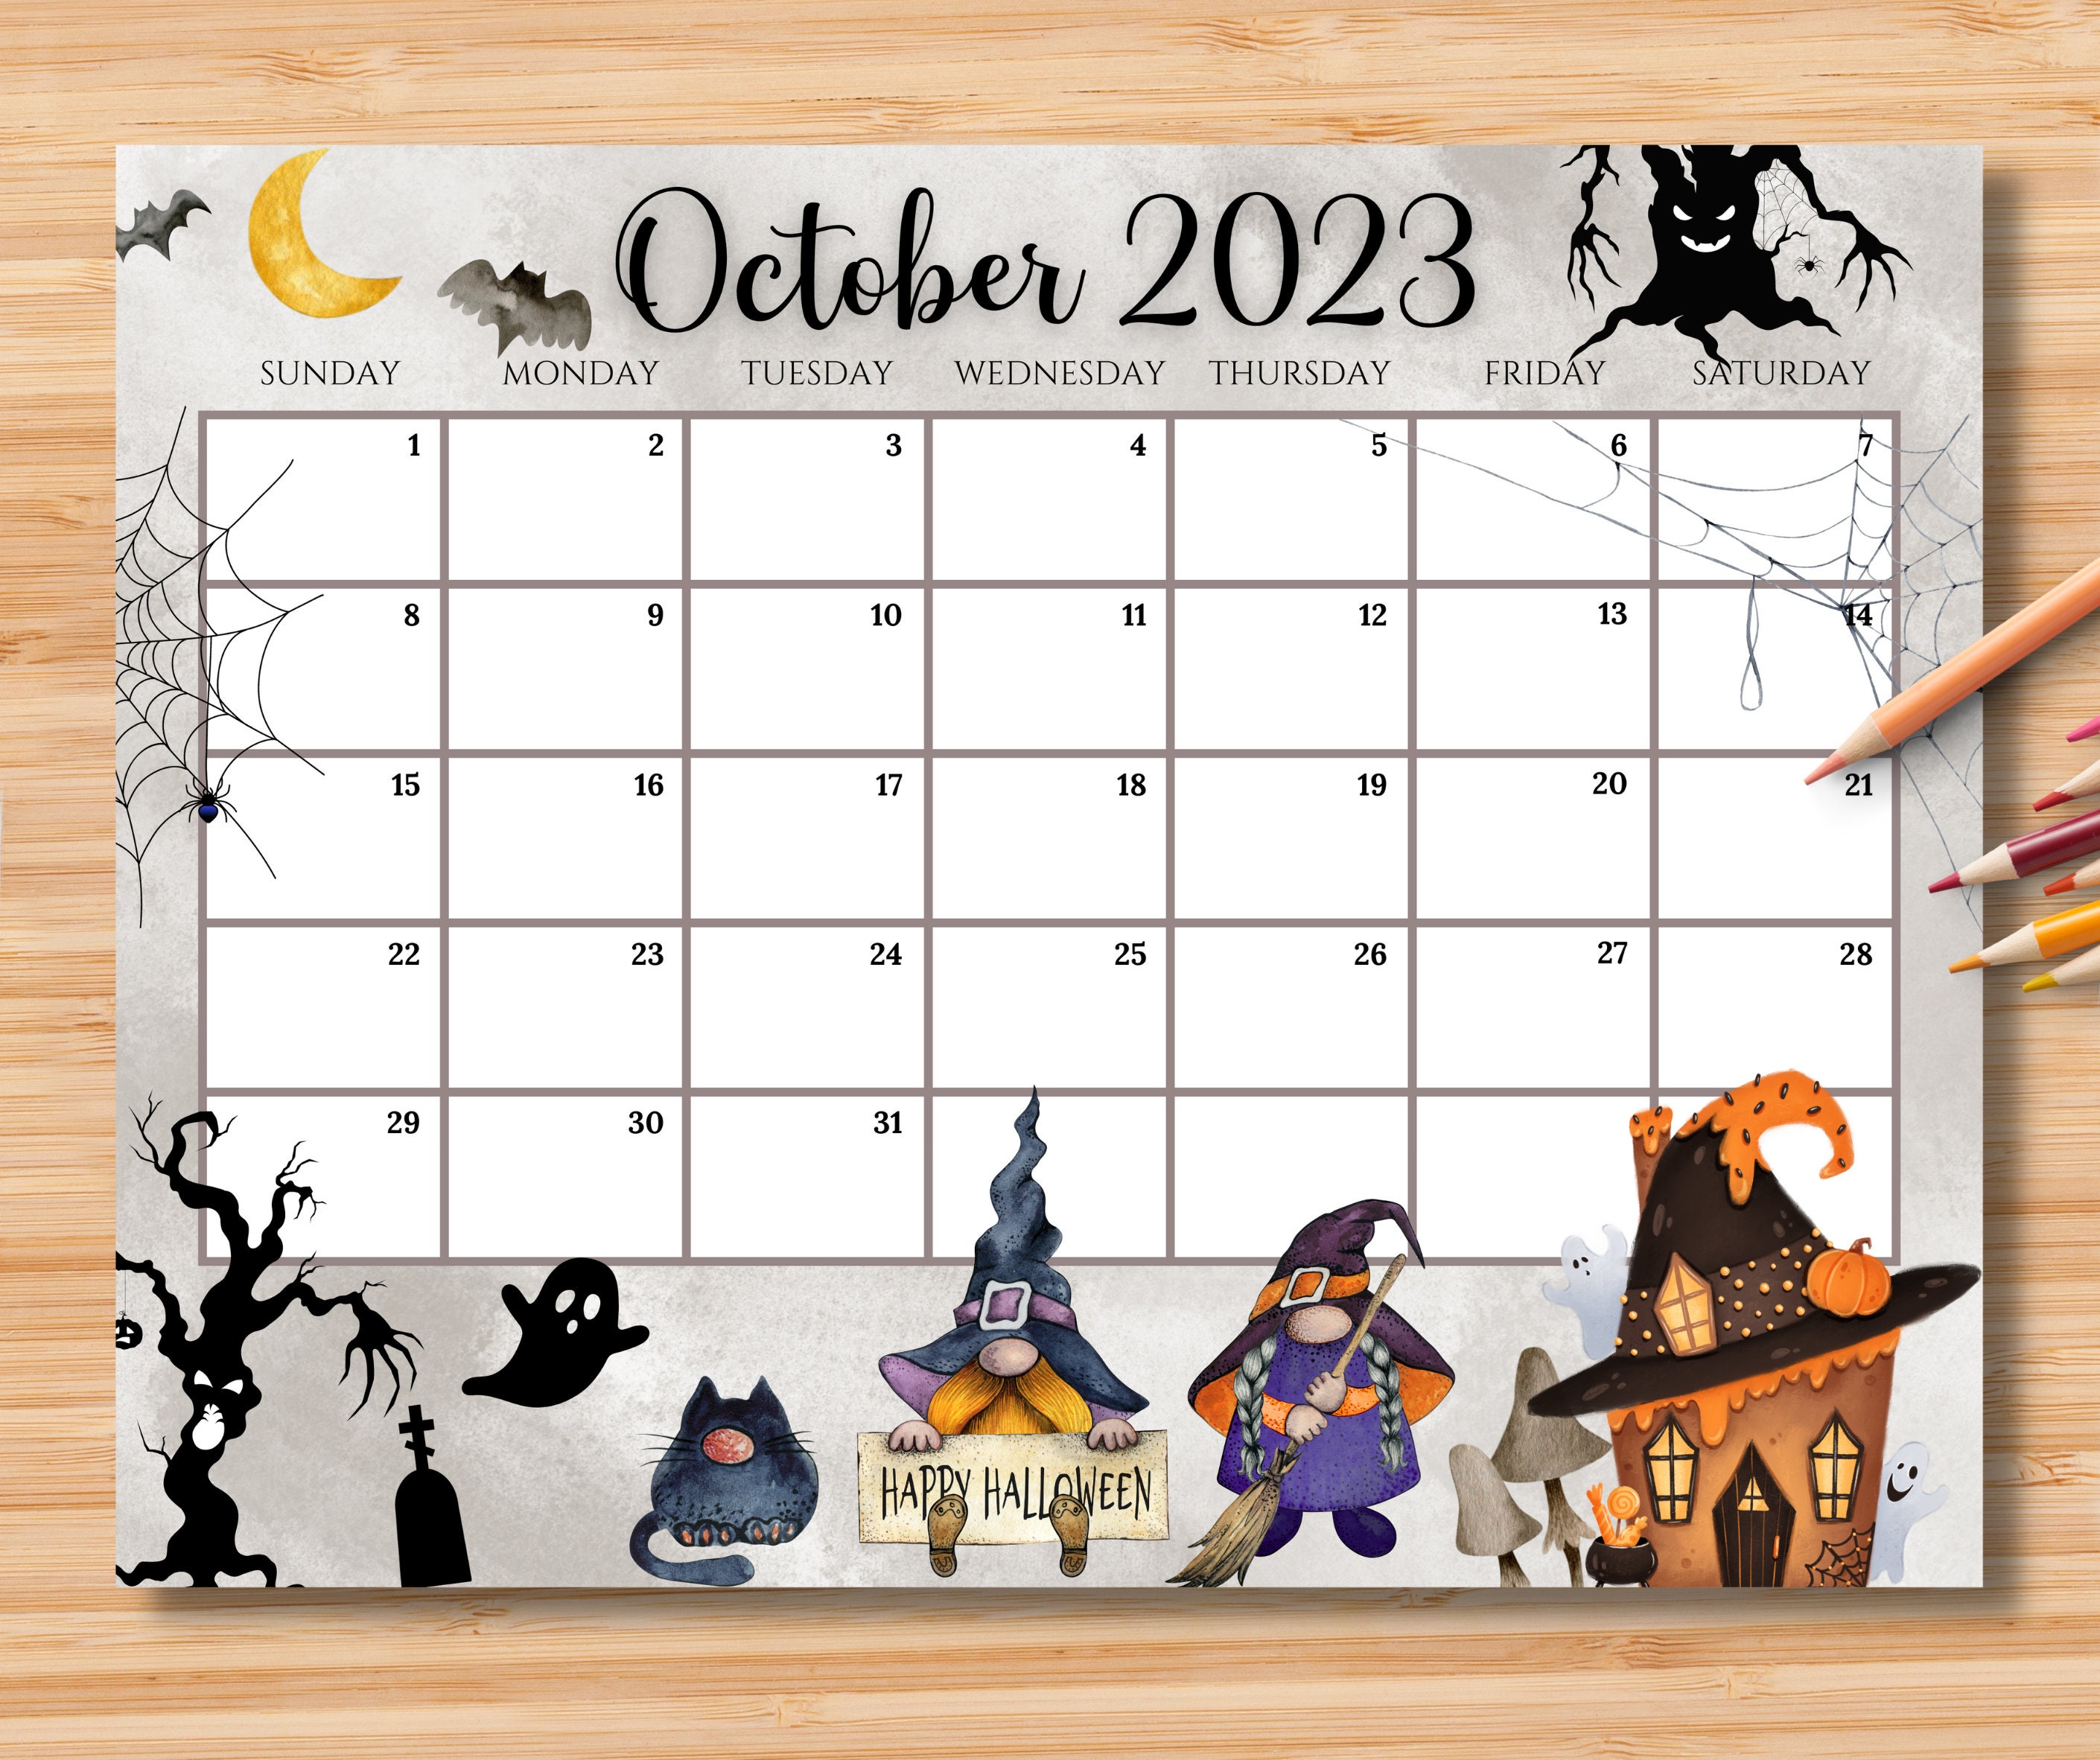 october-2023-calendar-for-kids-get-calendar-2023-update